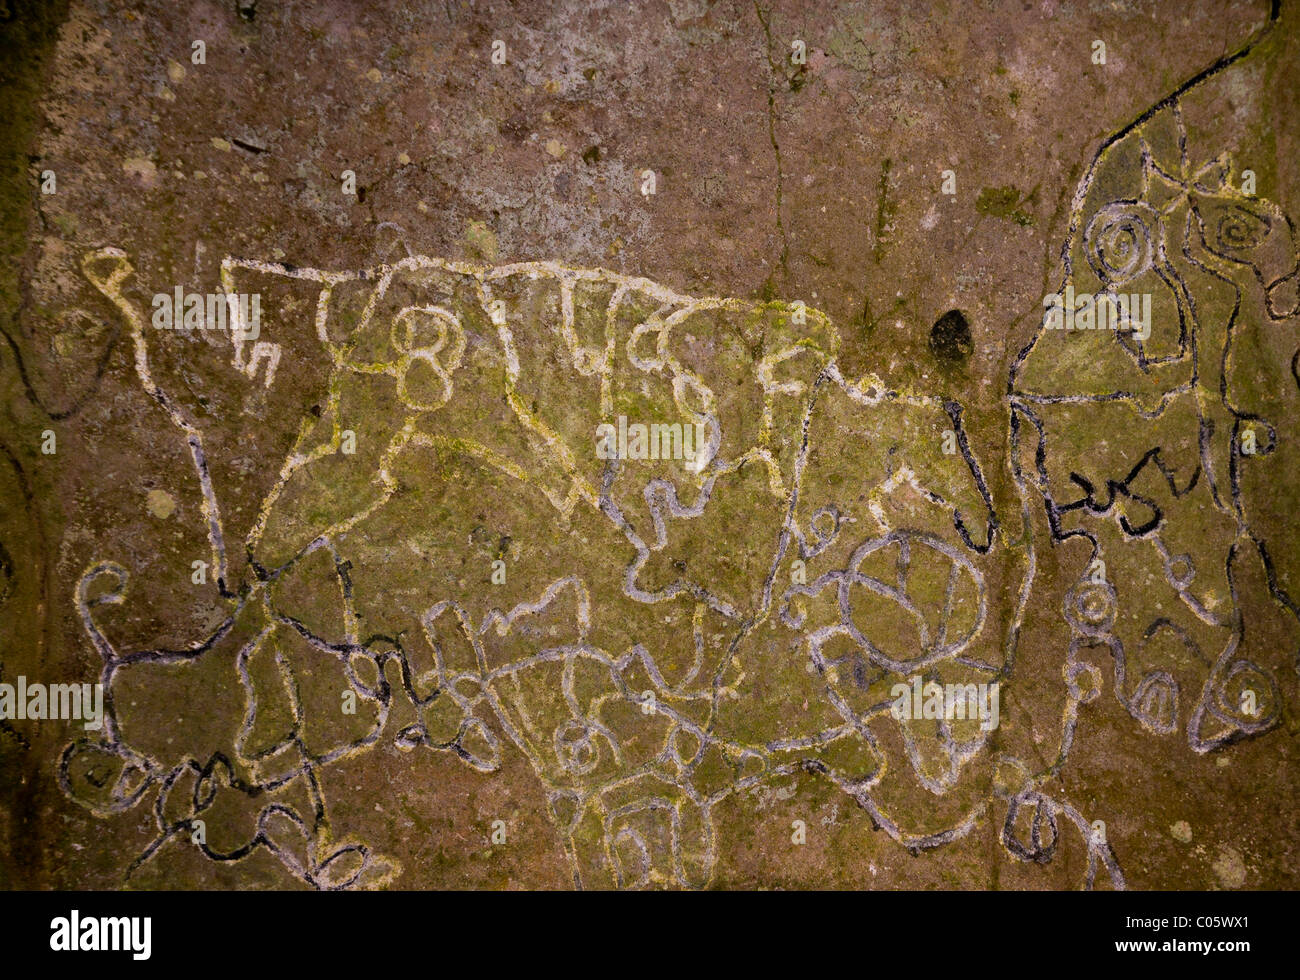 EL VALLE de Anton, PANAMA - pétroglyphes, l'art rupestre aborigène, au Sentier de la Piedra Pintada. Banque D'Images